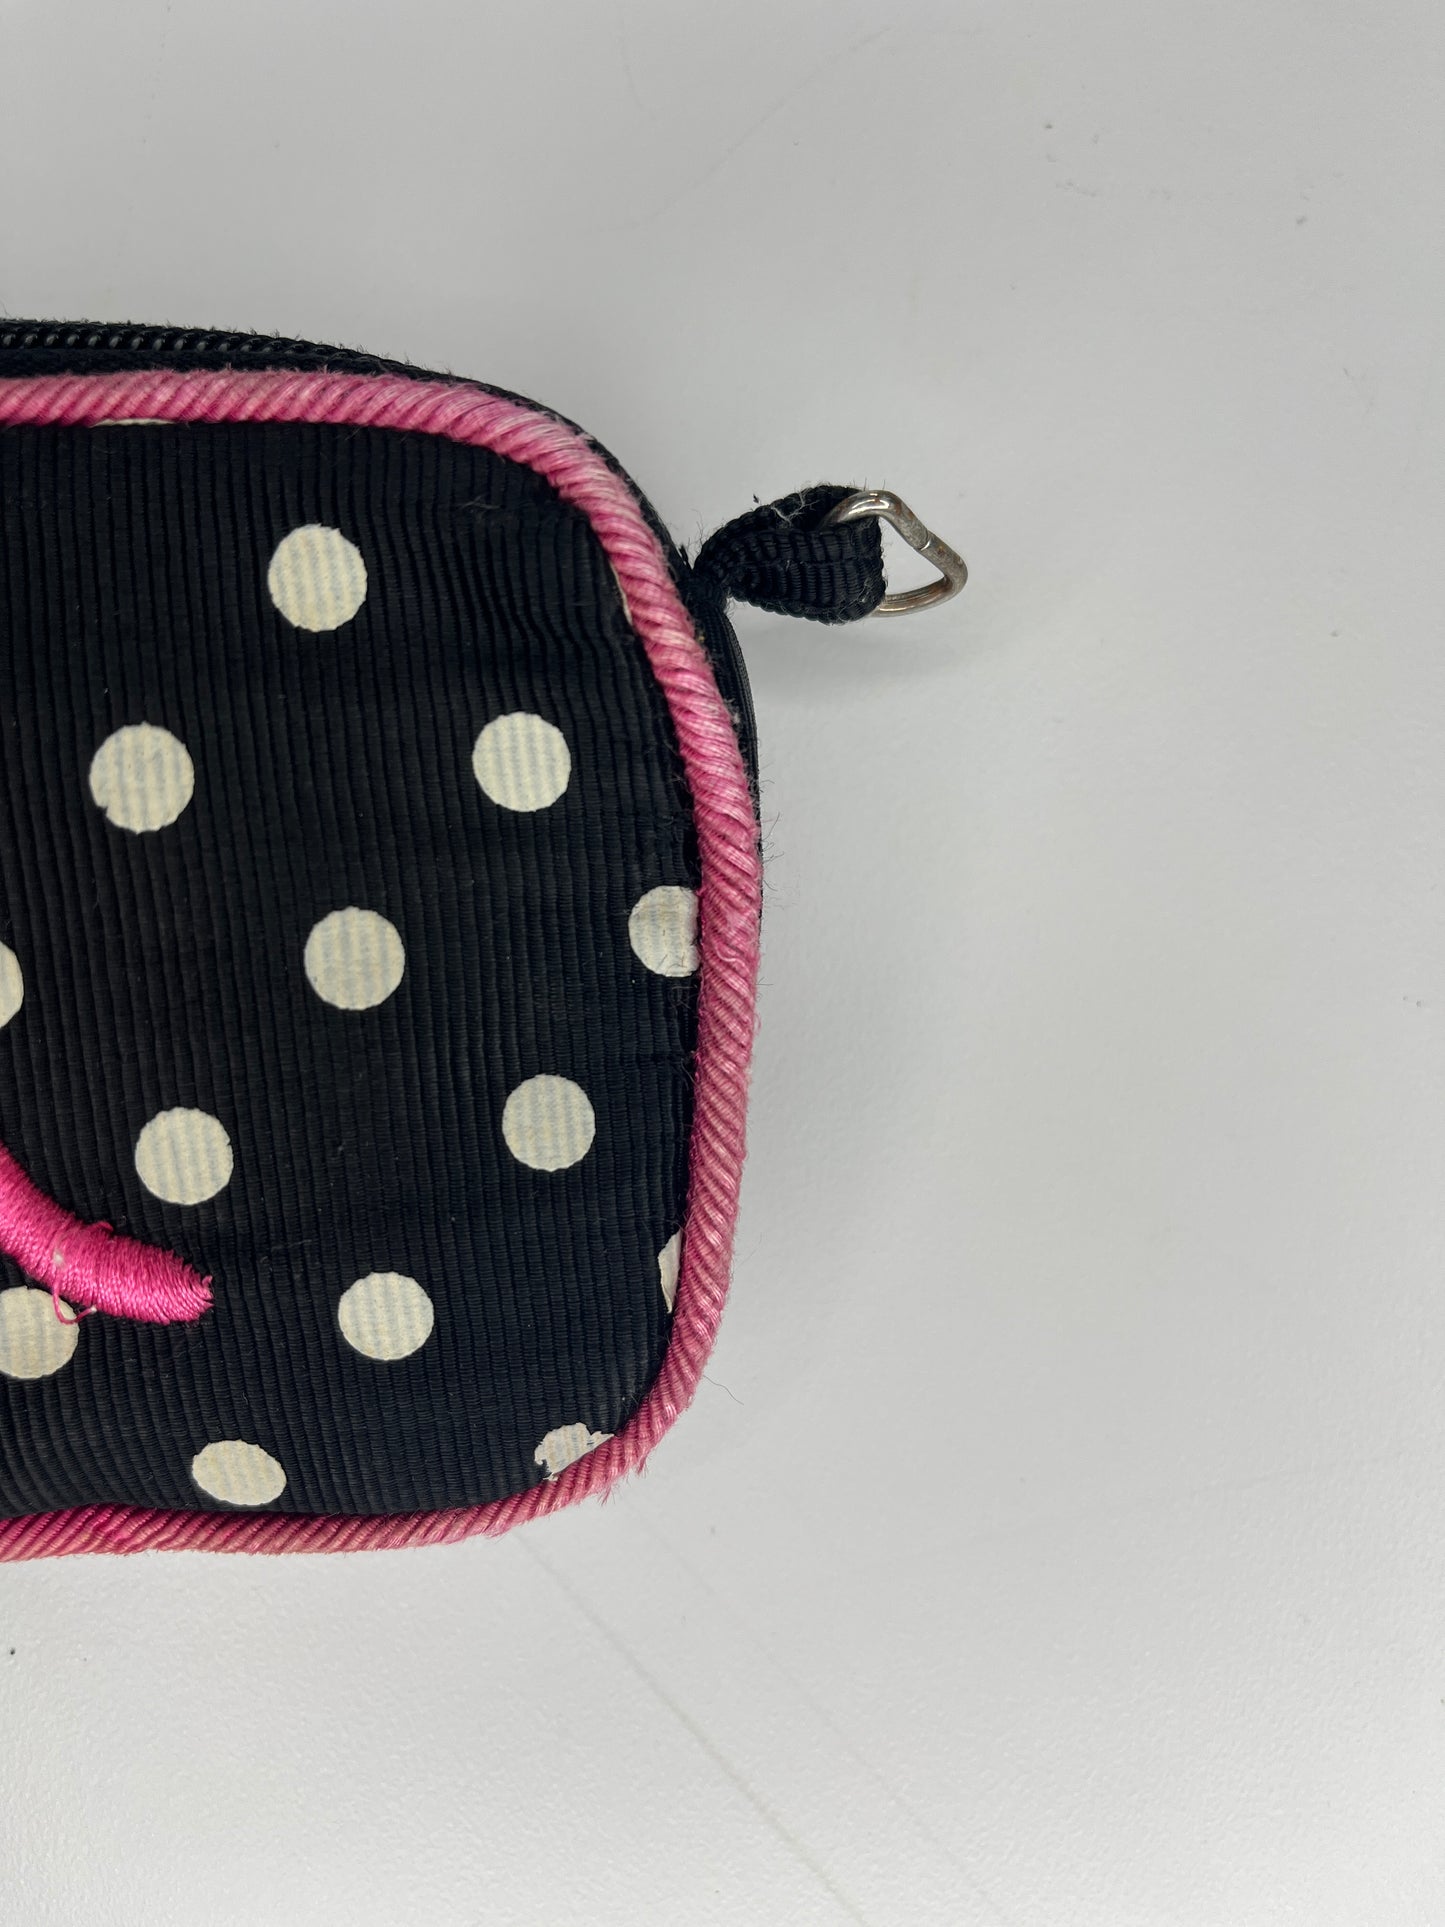 Change Pouch w Mirror "M" Embroidery Polka Dot Black, White, Pink SKU 000432